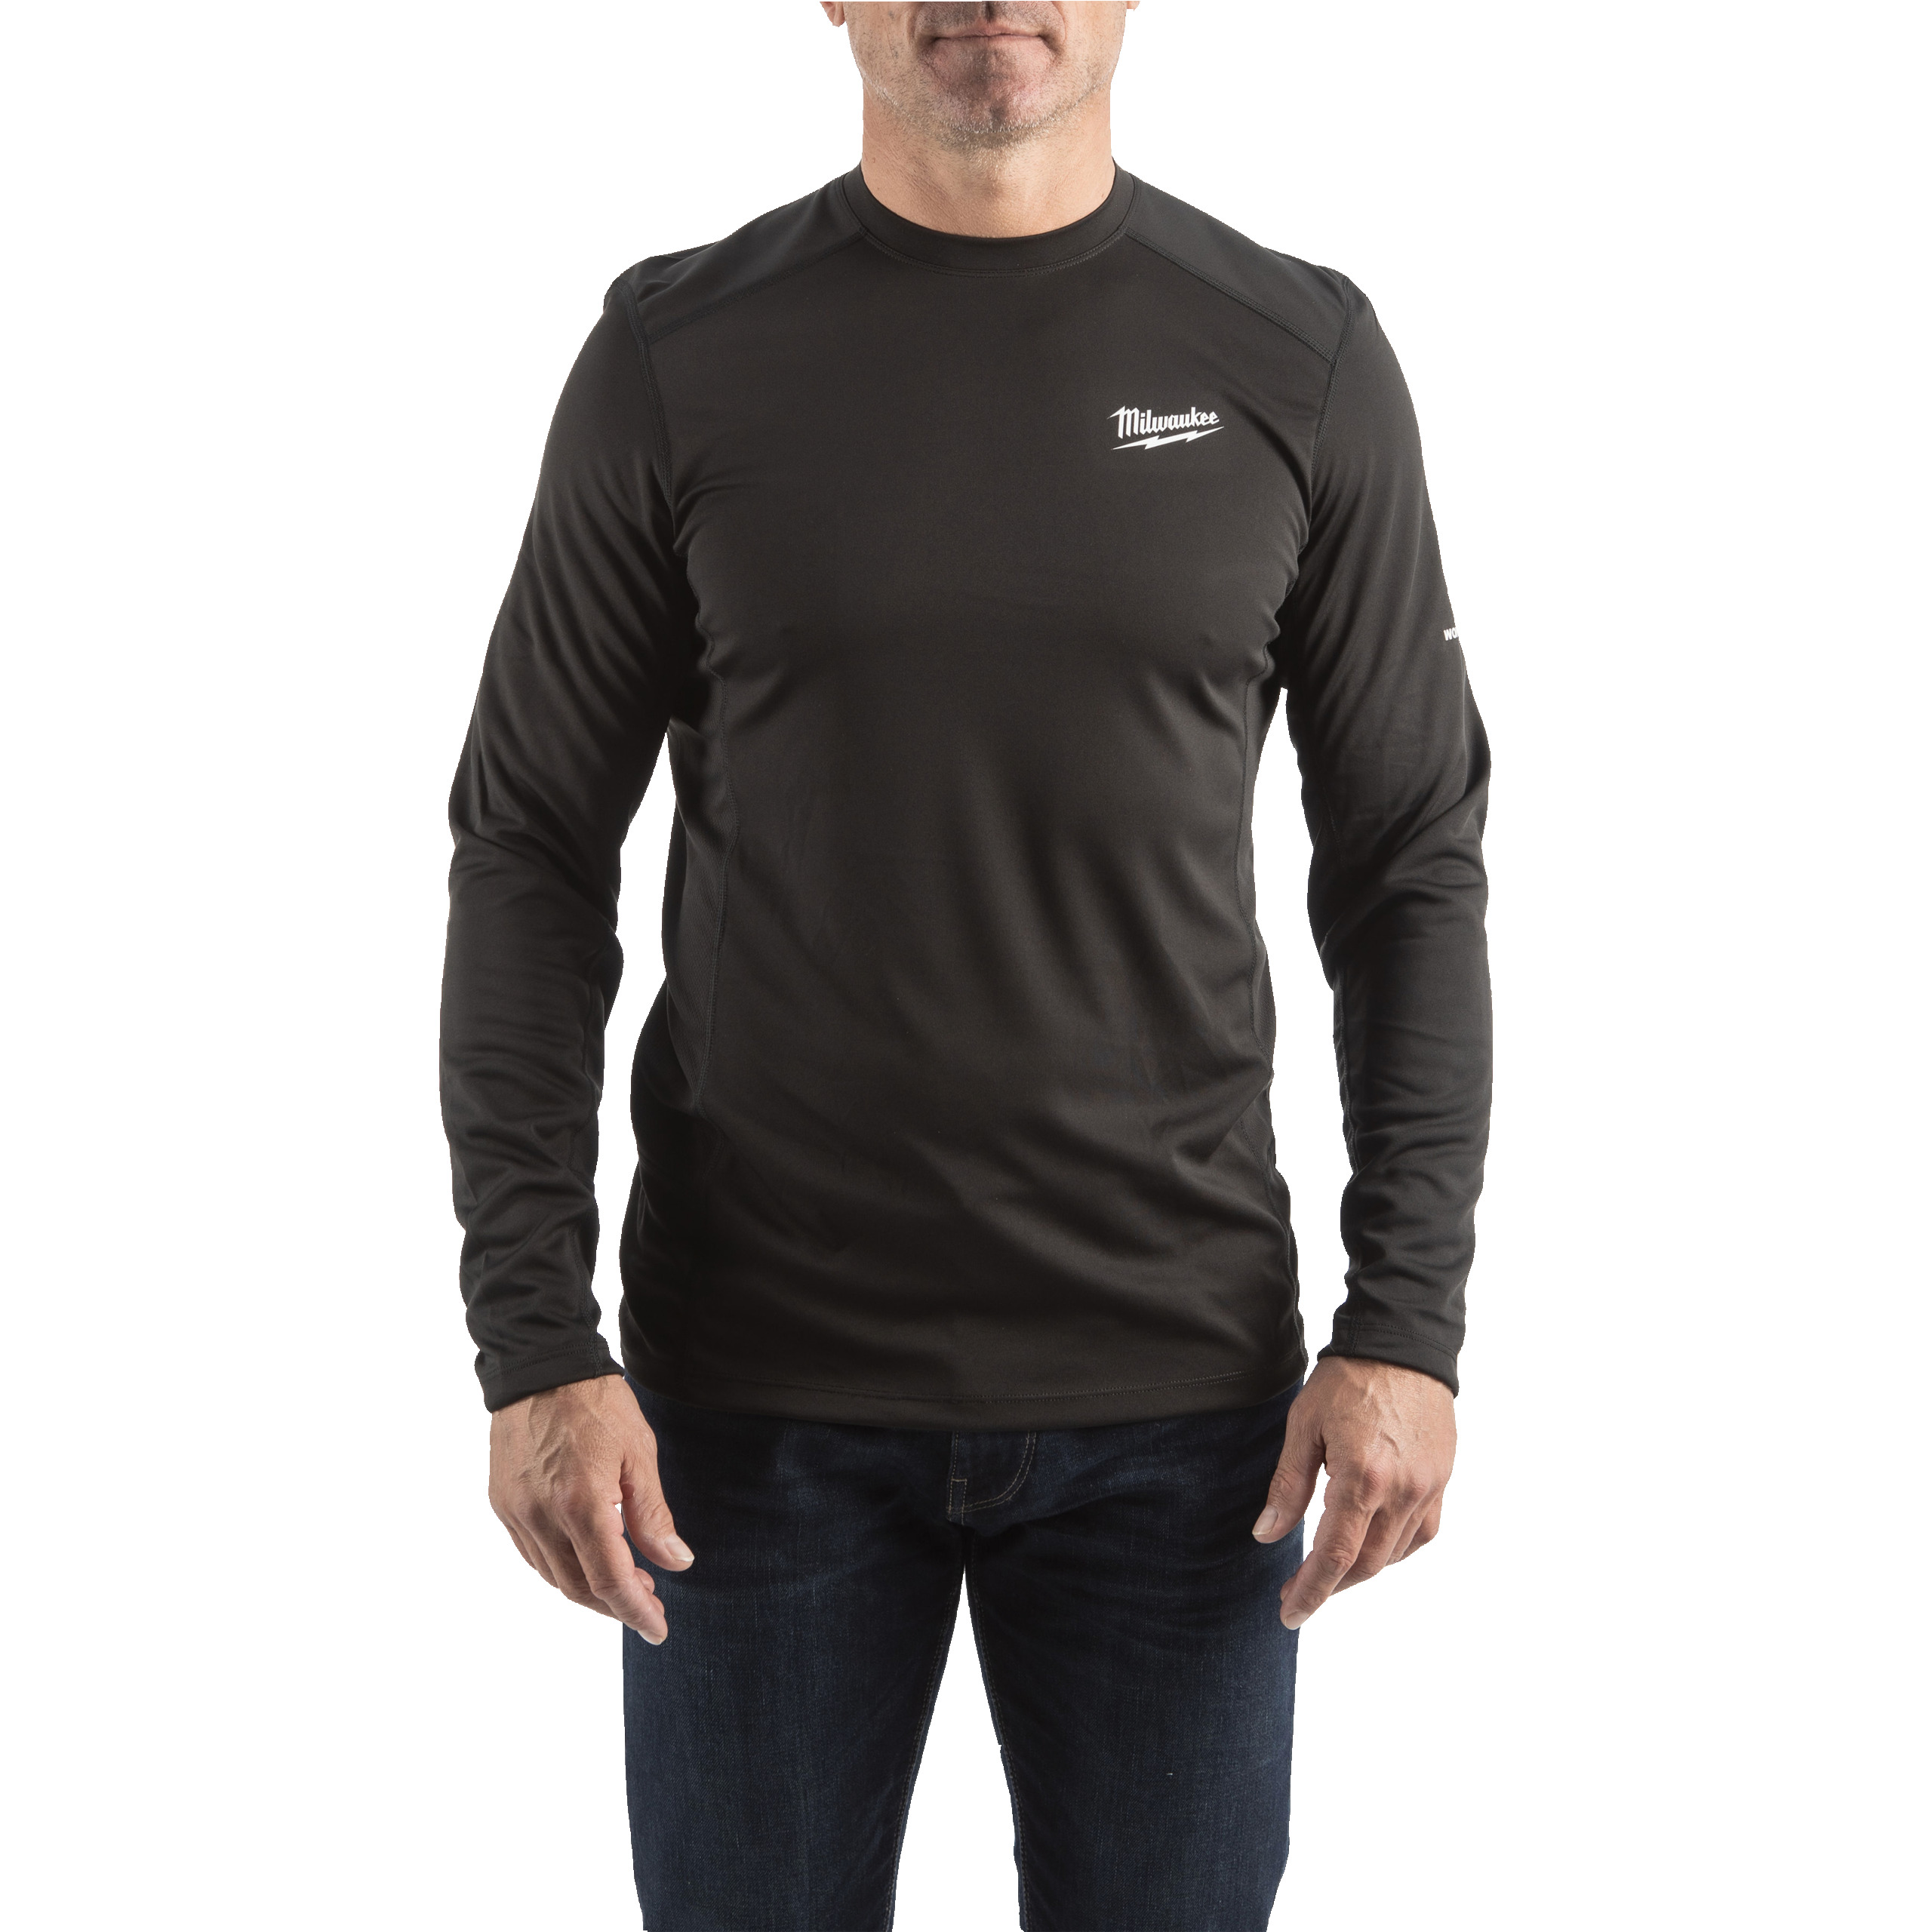 Funktions-Langarm-Shirt schwarz mit UV-Schutz (WWLSBL-XL)